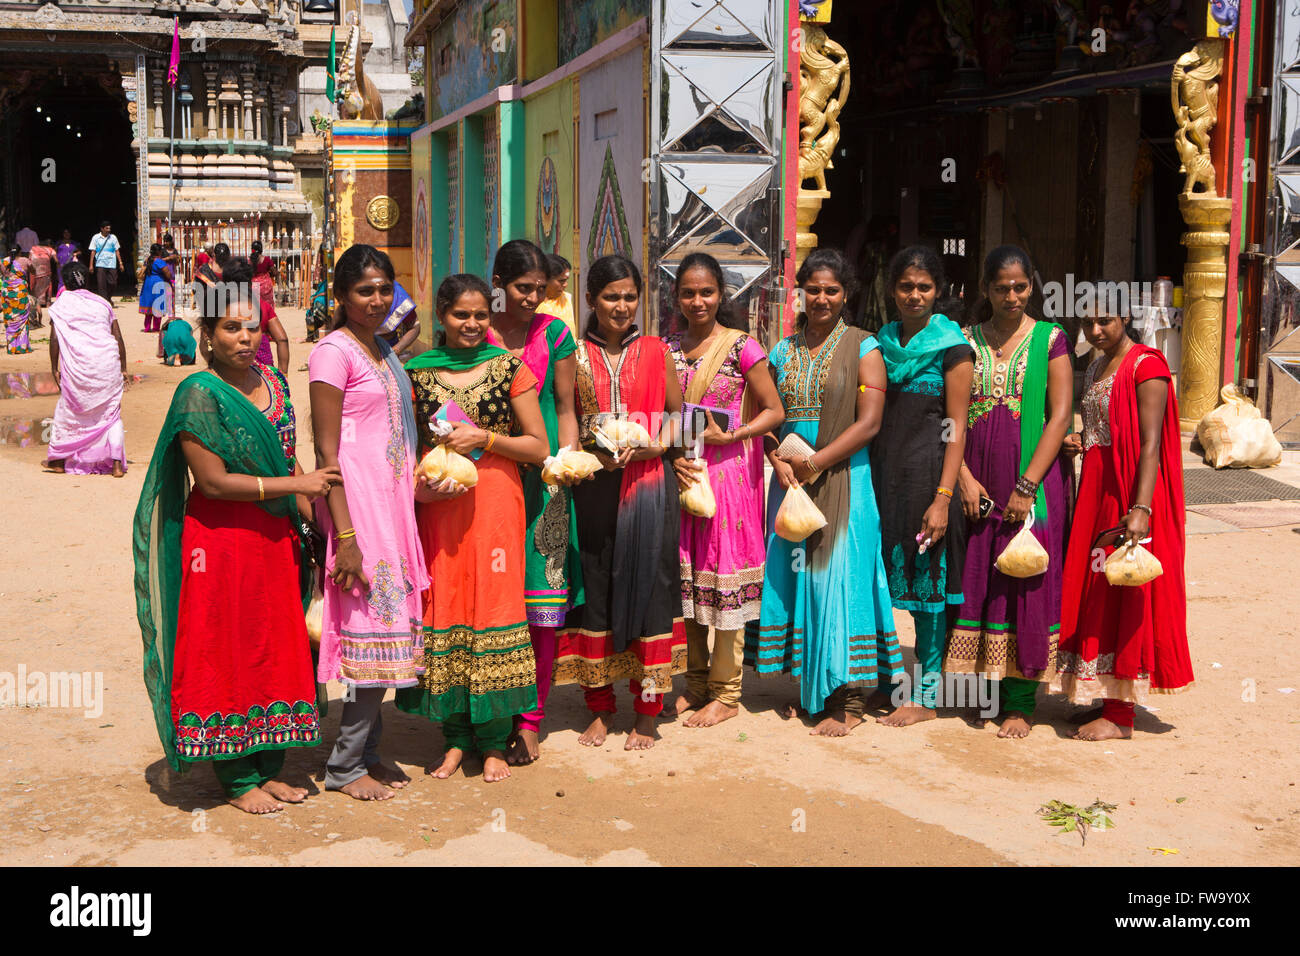 Sri Lanka, Trincomalee, Pillaiyar Kovil temple, bien habillé les femmes en saris colorés à l'entrée Banque D'Images